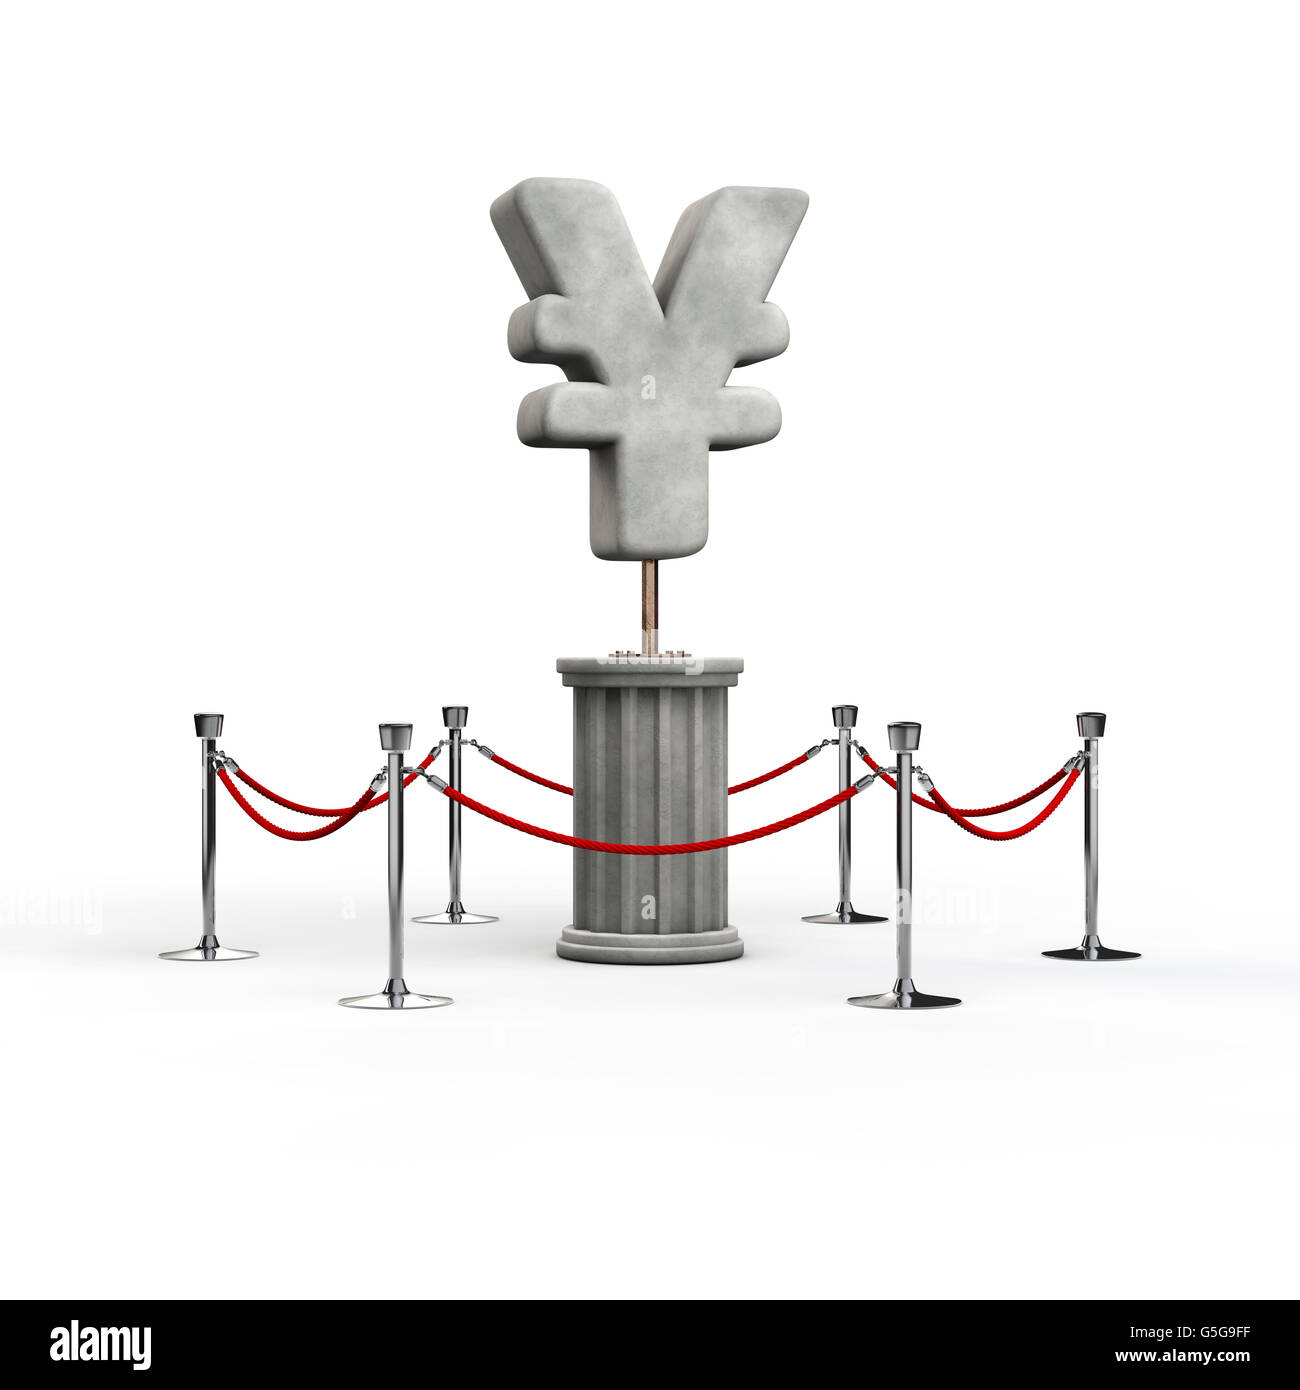 Le yen exposition / 3D illustration de la sculpture symbole yen Banque D'Images